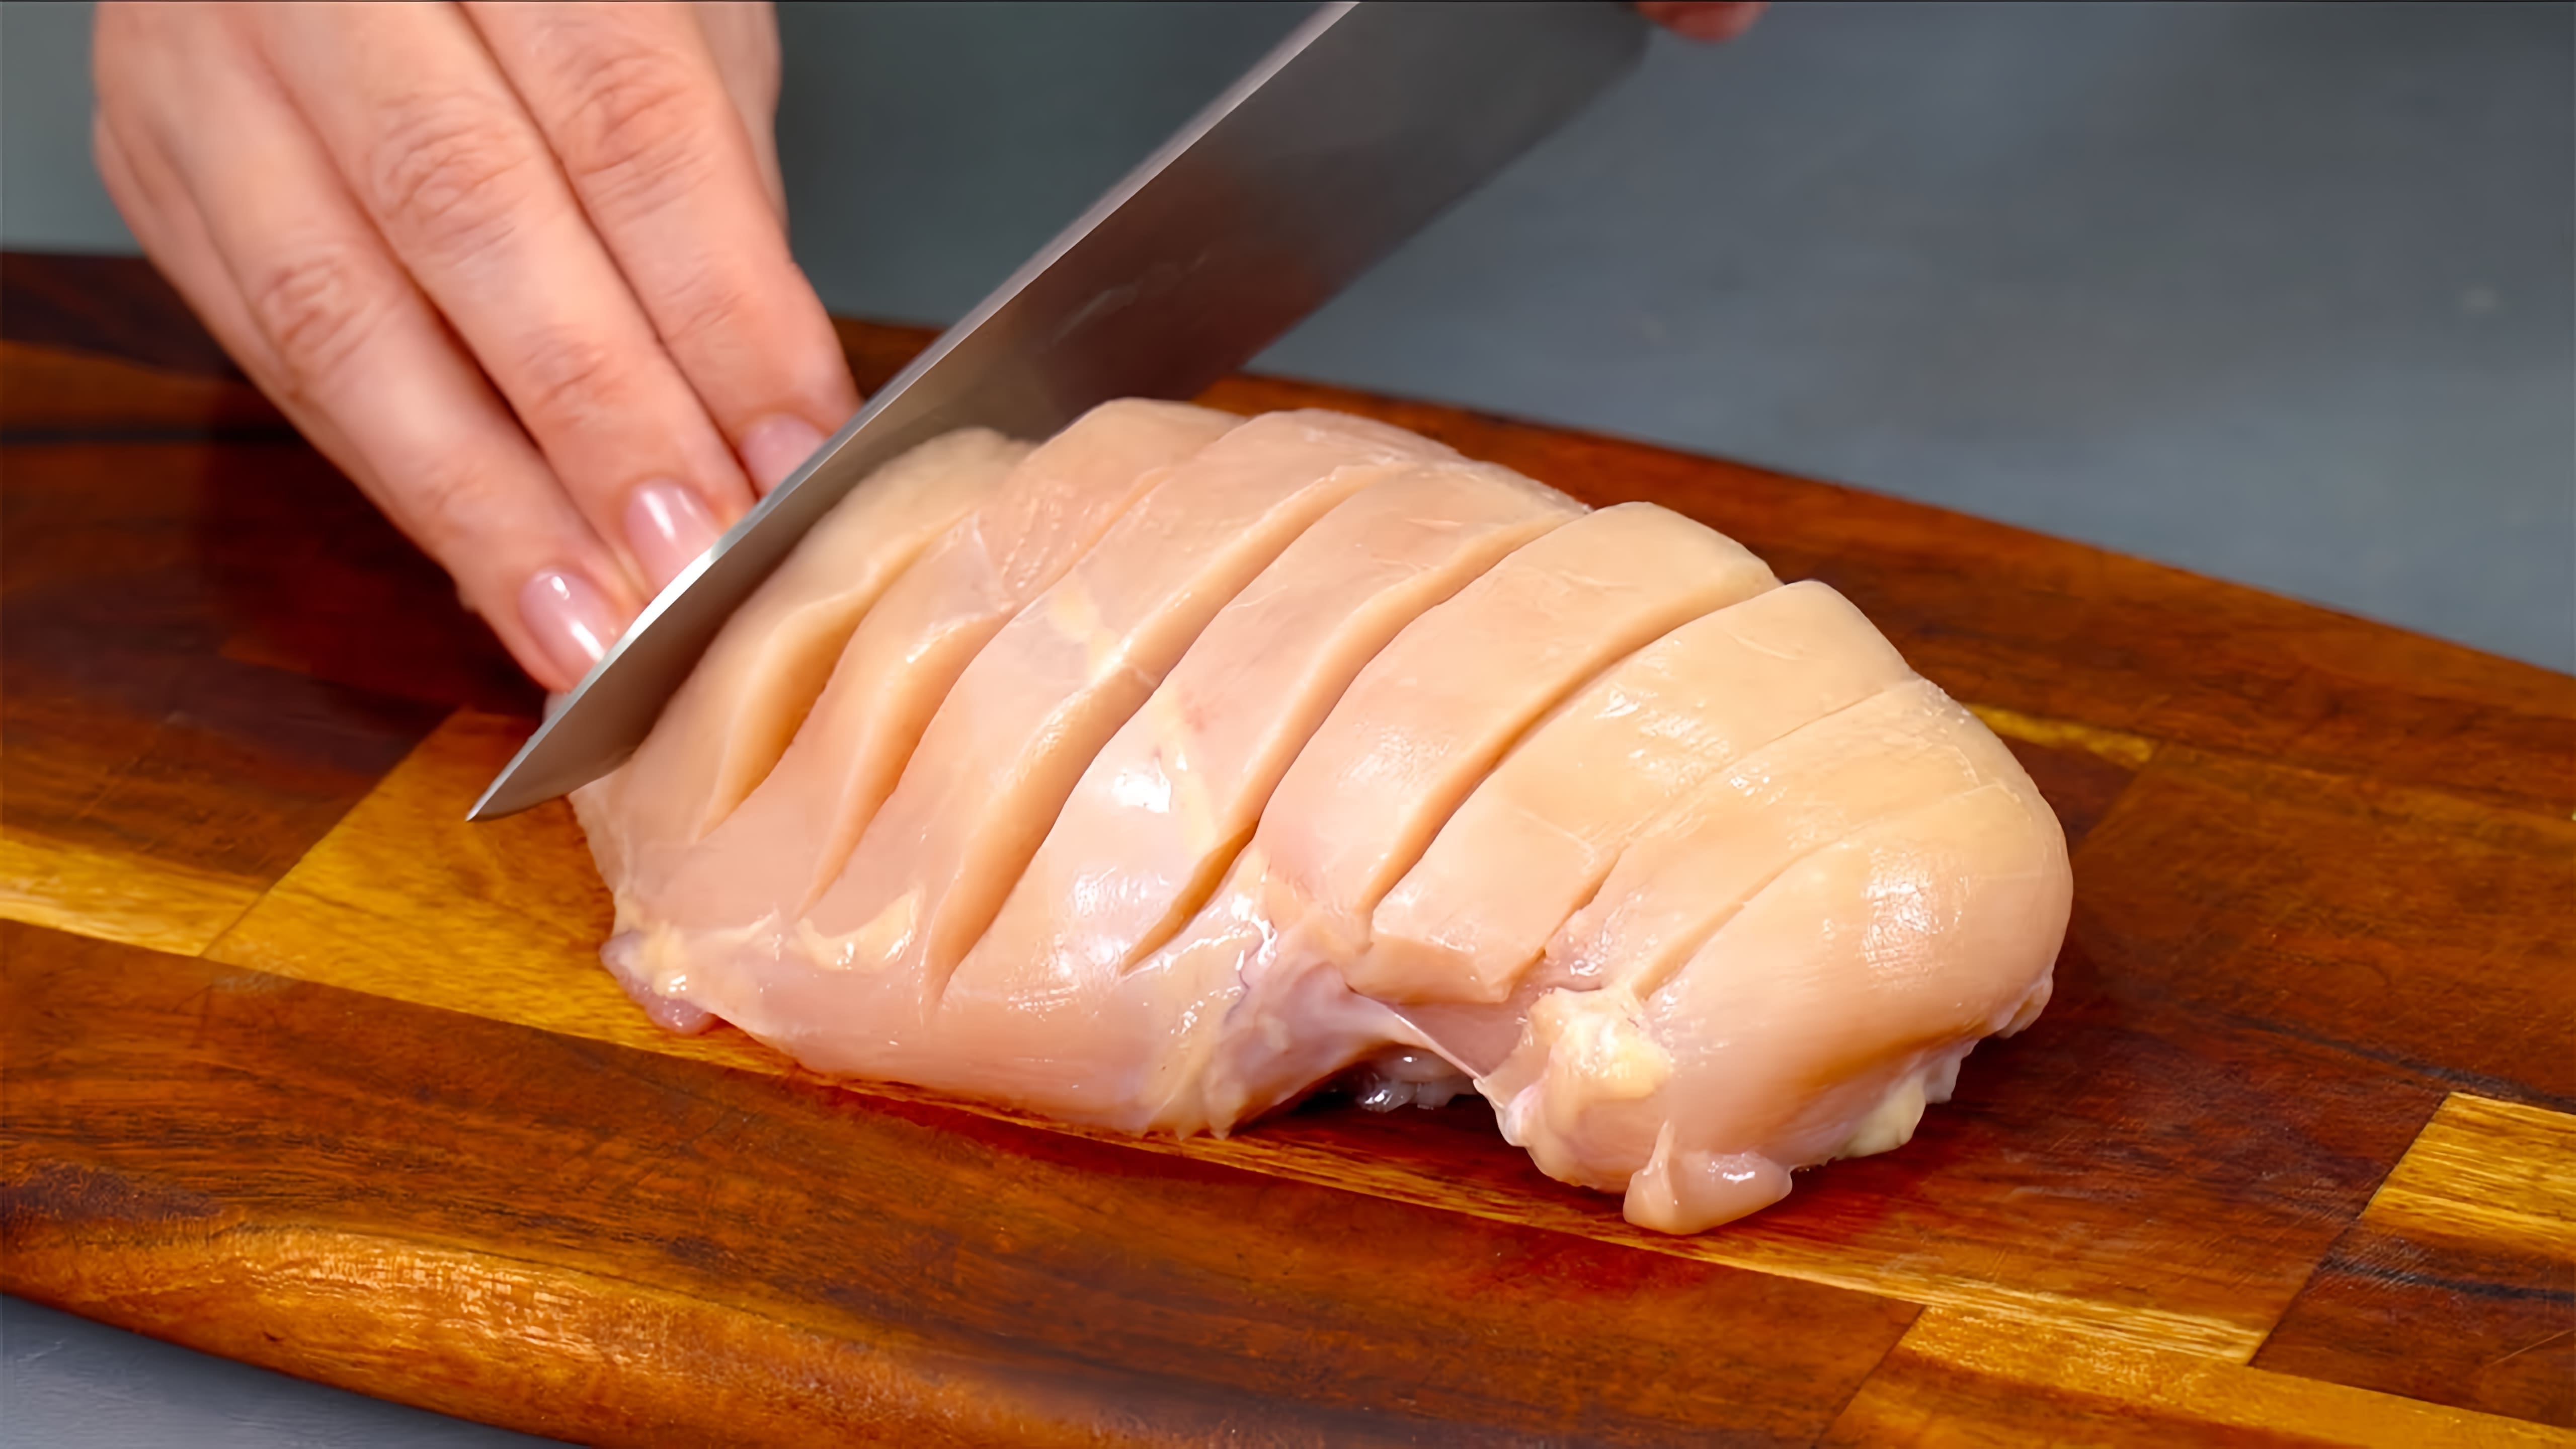 В этом видео показаны различные способы приготовления куриного филе, чтобы сделать его более привлекательным для праздничного стола